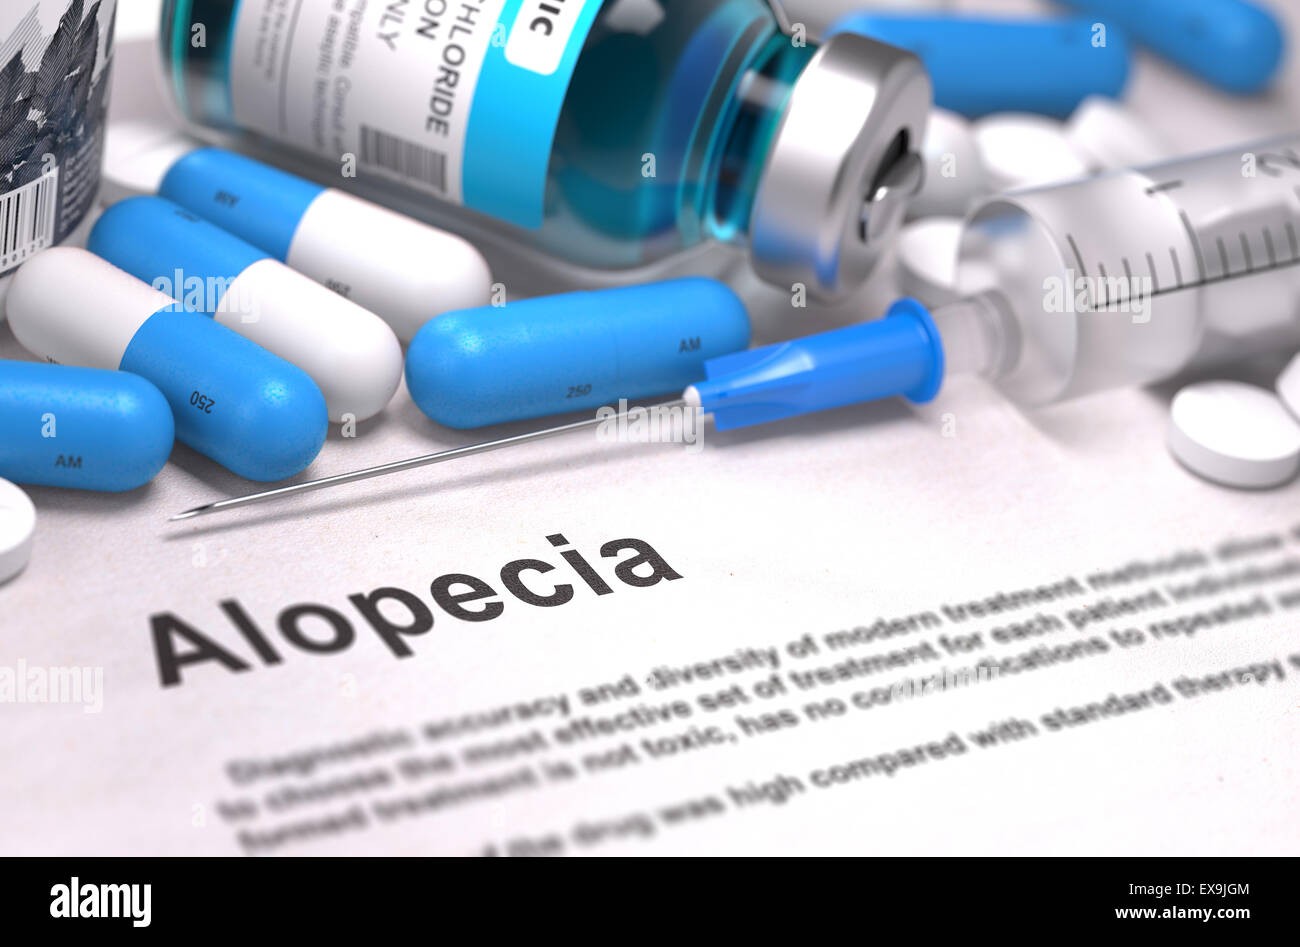 Diagnosis - Alopecia. Medical Concept. Stock Photo